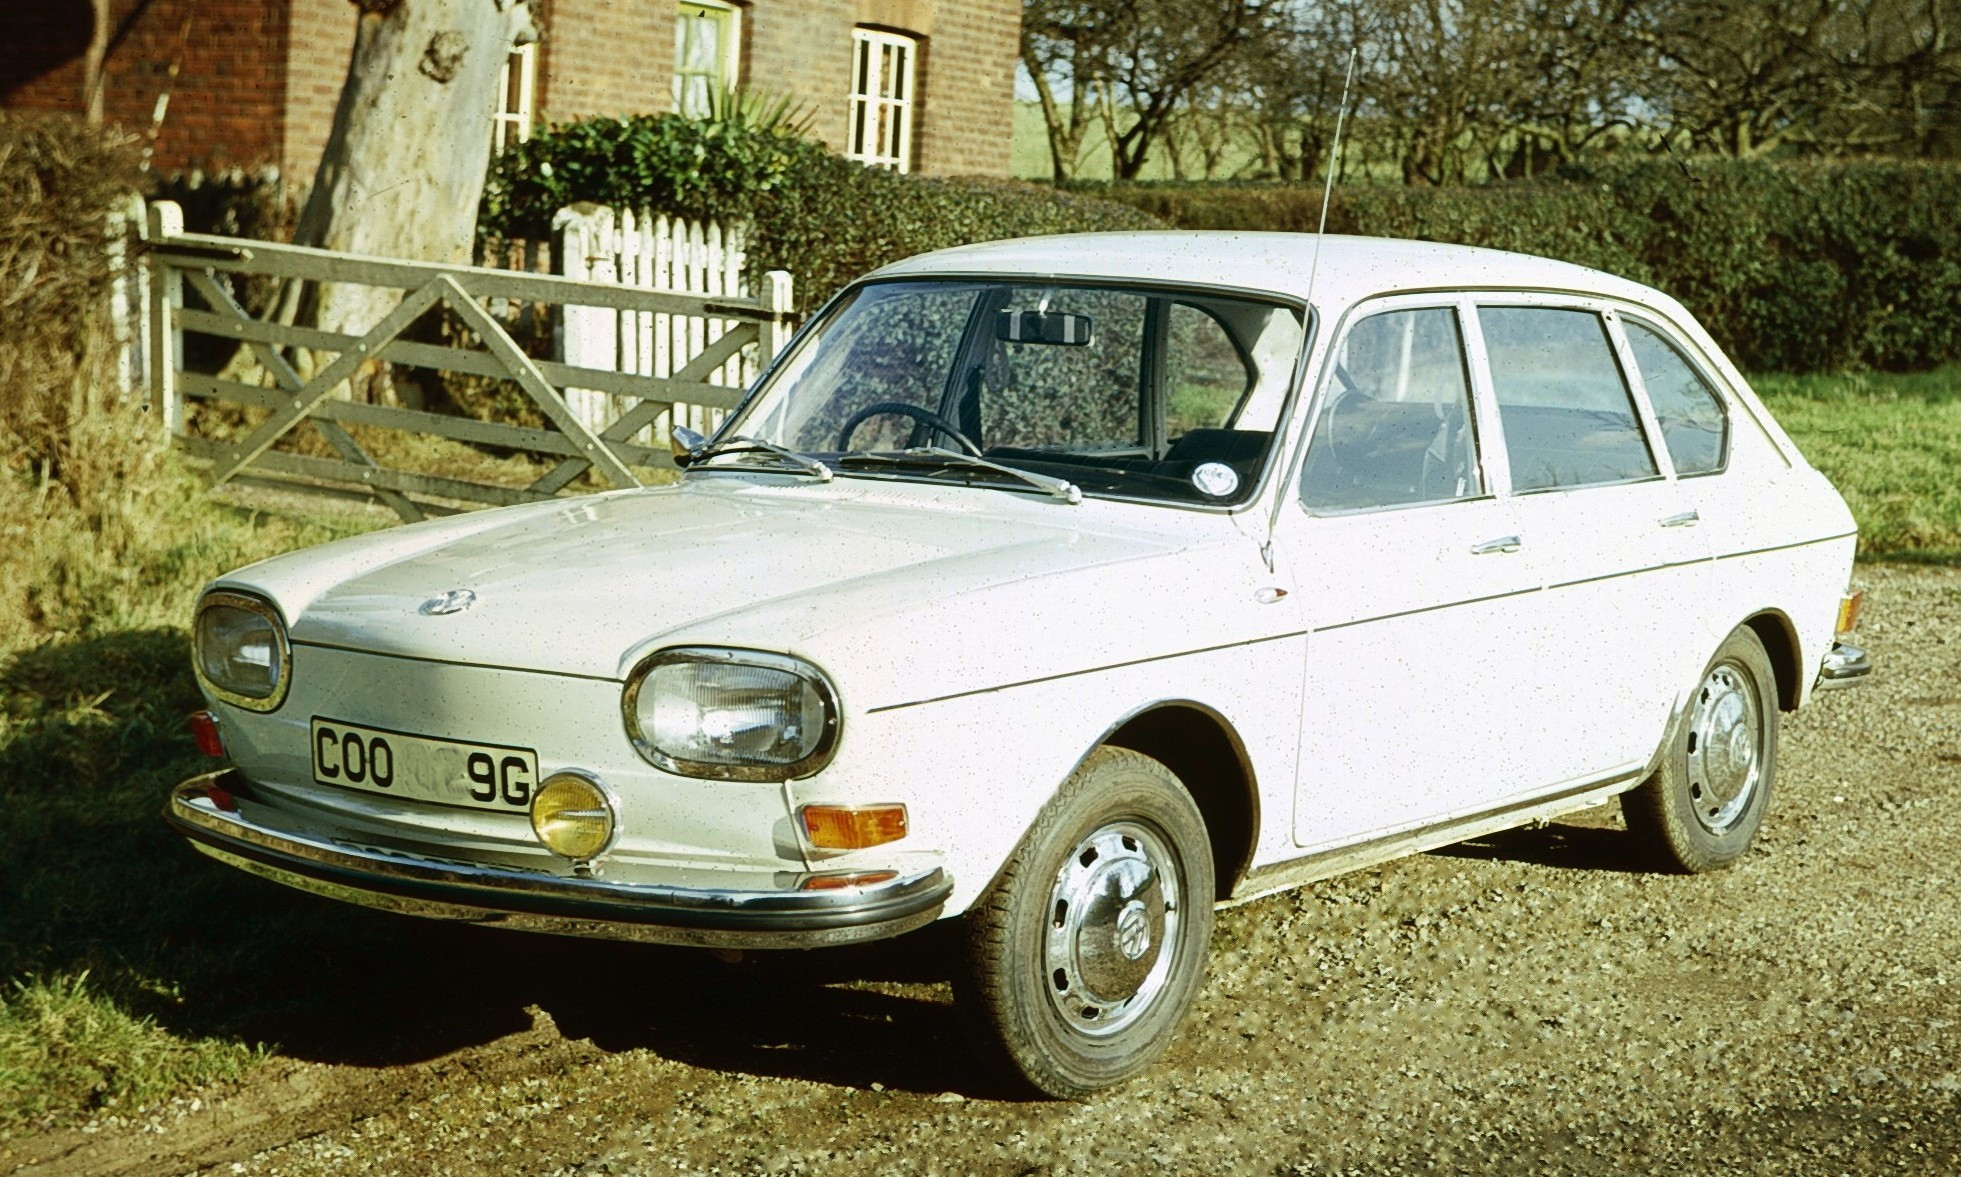 Volkswagen 411